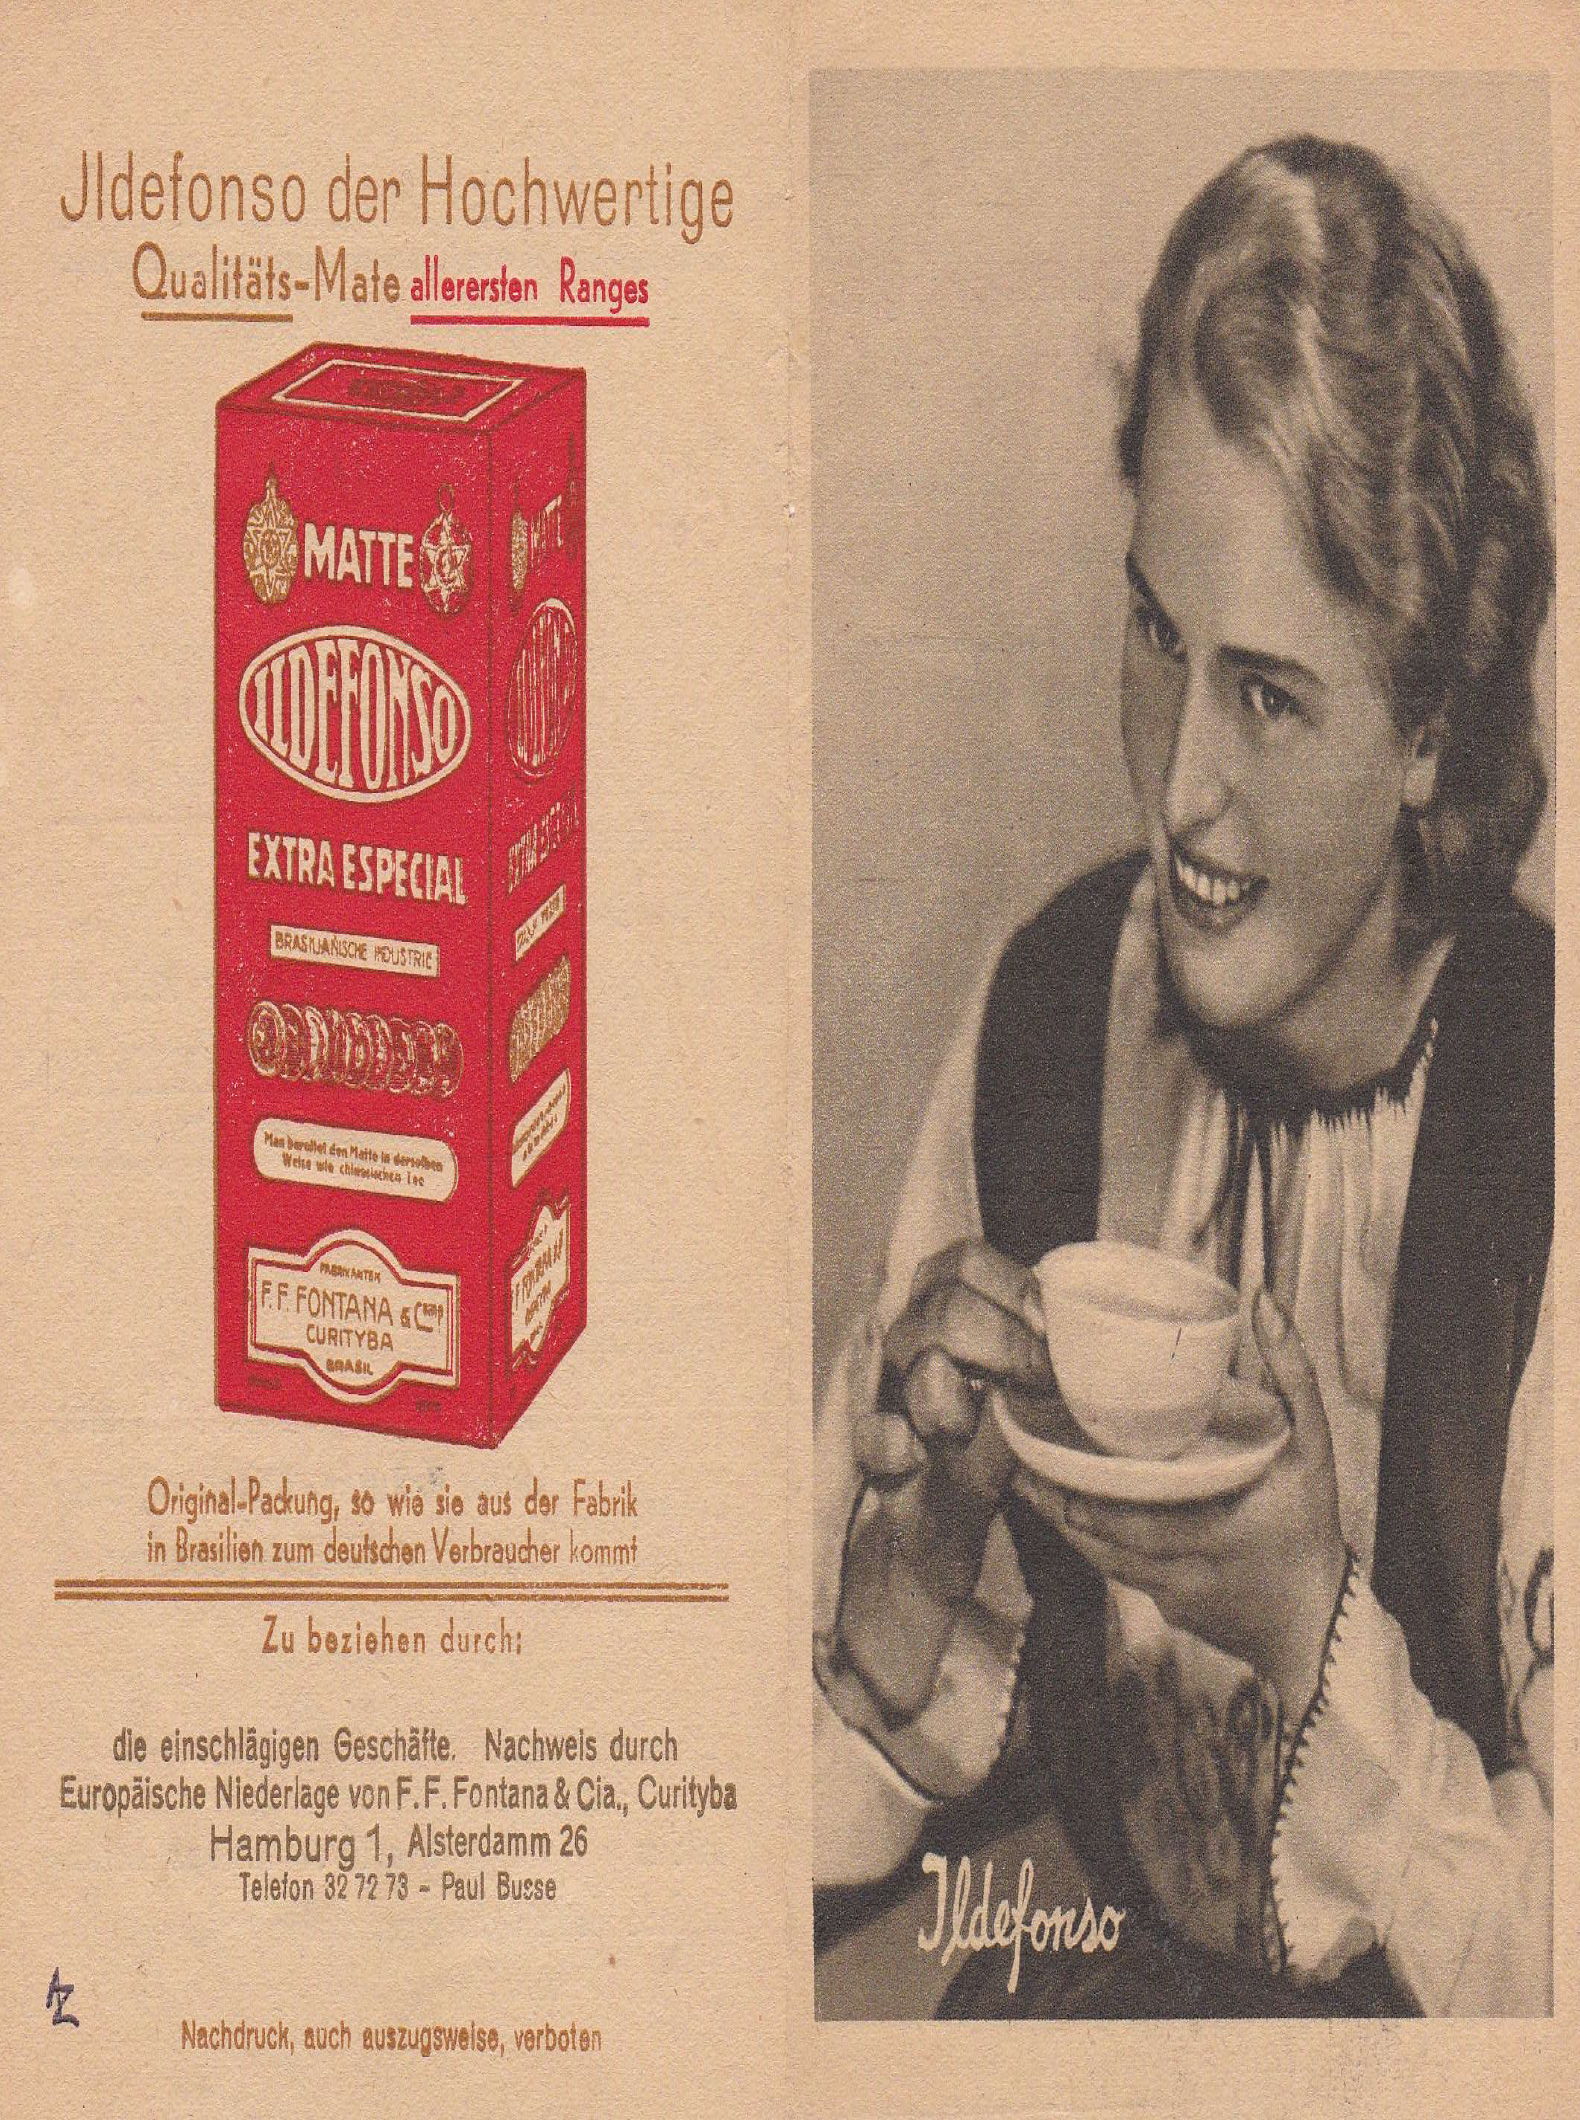 Abbildung19: Werbung für den brasilianischen Matte-Tee Ildefonso